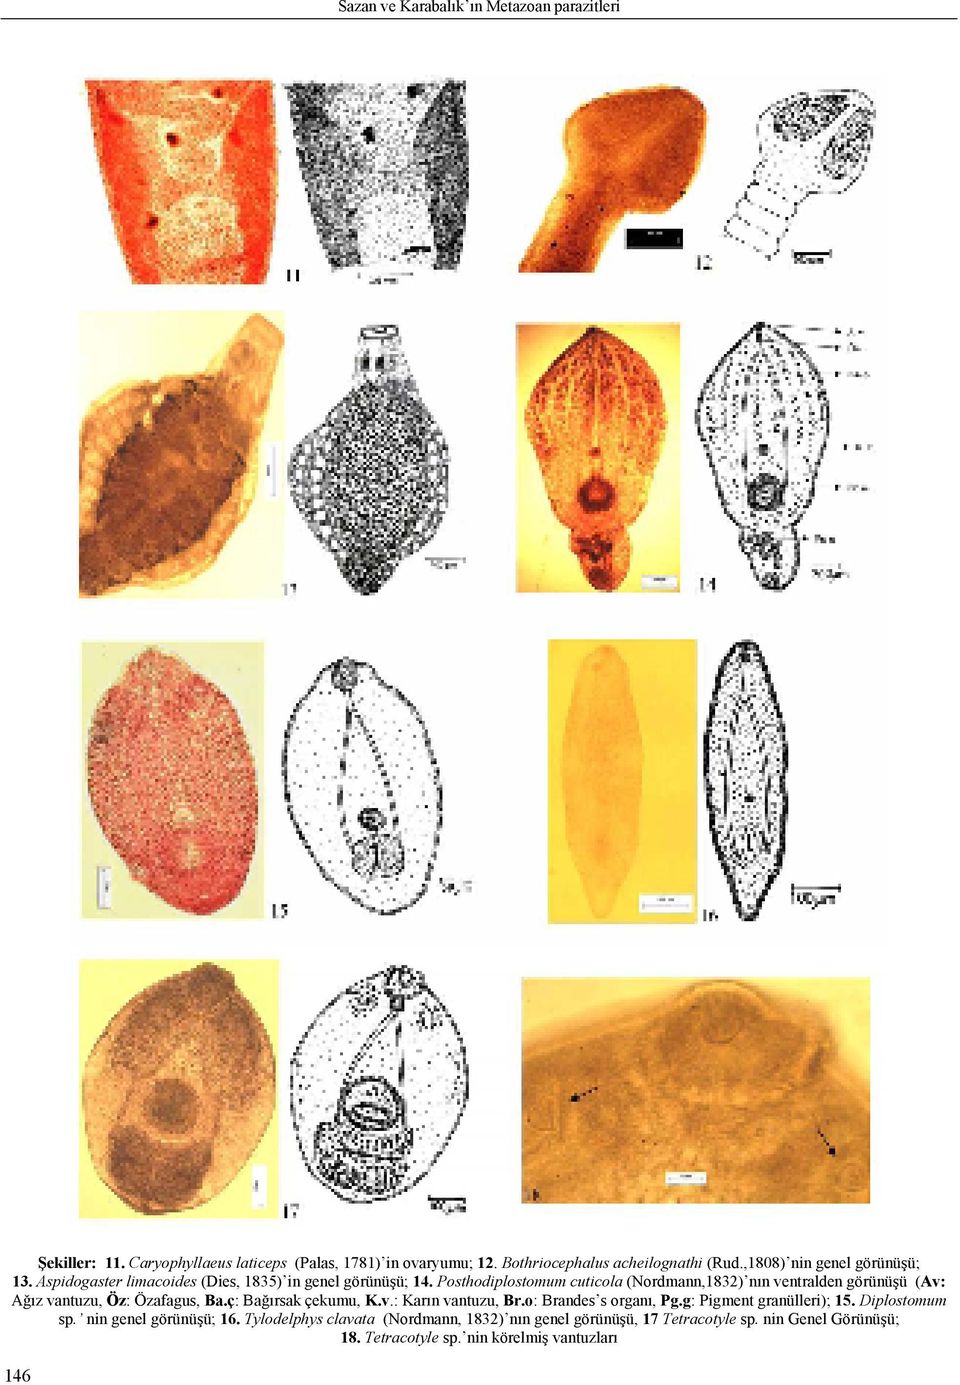 Posthodiplostomum cuticola (Nordmann,1832) nın ventralden görünüşü (Av: Ağız vantuzu, Öz: Özafagus, Ba.ç: Bağırsak çekumu, K.v.: Karın vantuzu, Br.